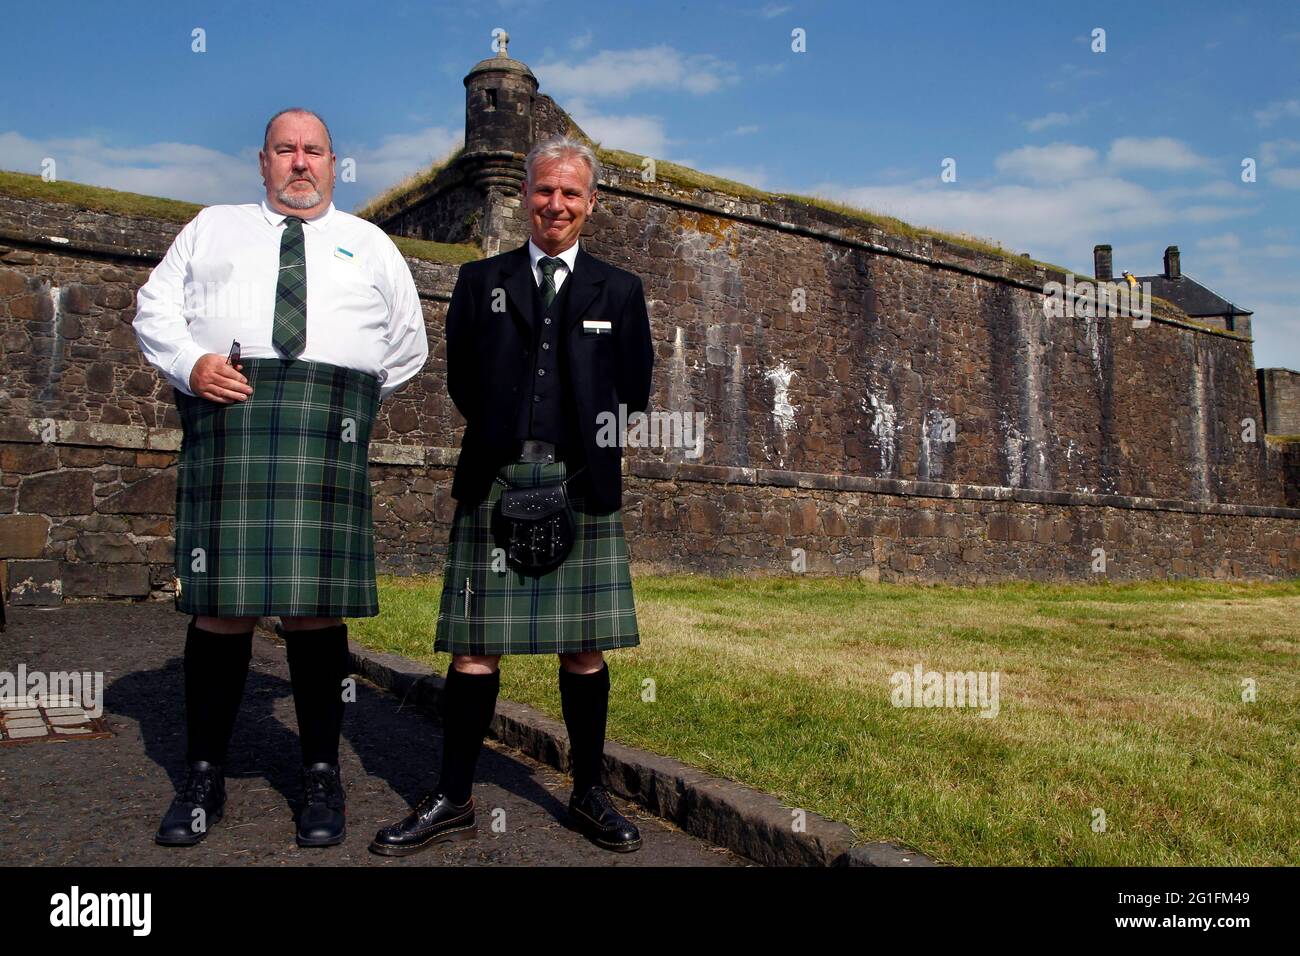 Männer in Kilts, 2 Kilts, Tartan, vor Stirling Castle, Castle, Castle Hill, Battle of Bannockburn, Stirling, Stirling und Falkirk, Midlands Stockfoto